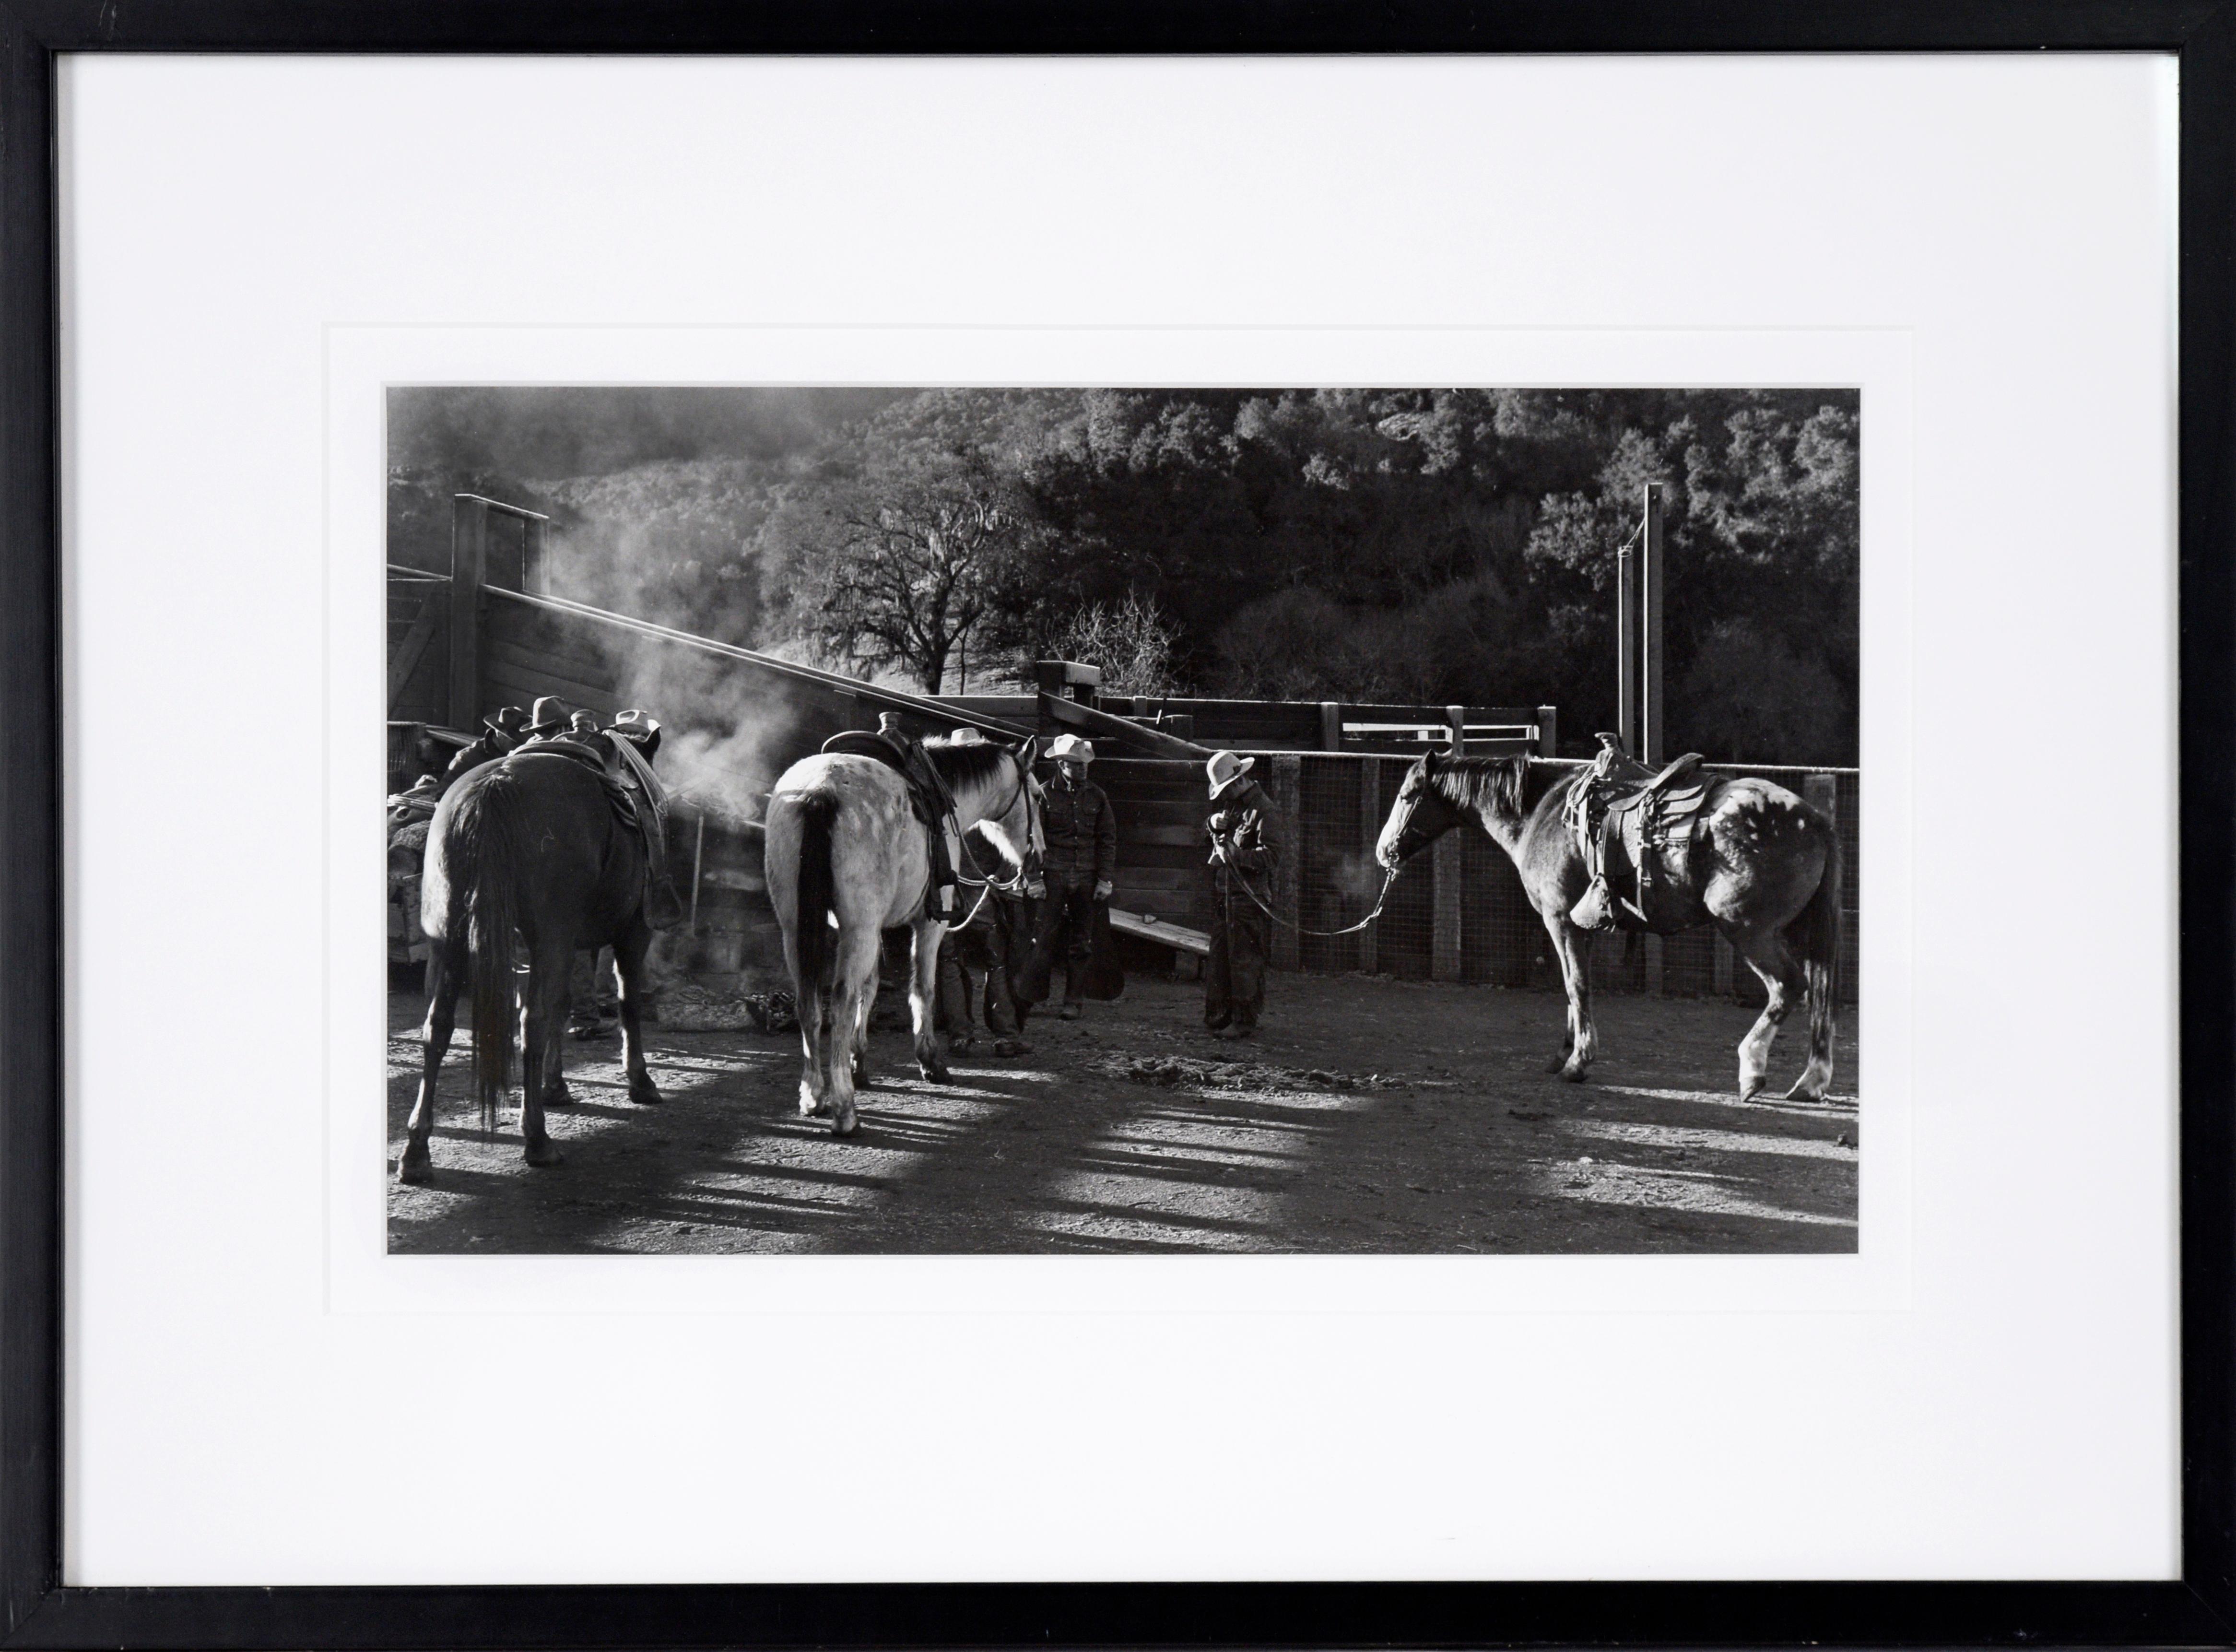 Hands de ranch Oppenheimer - Rancho San Carlos Cattle Ranch, photographie des années 1950